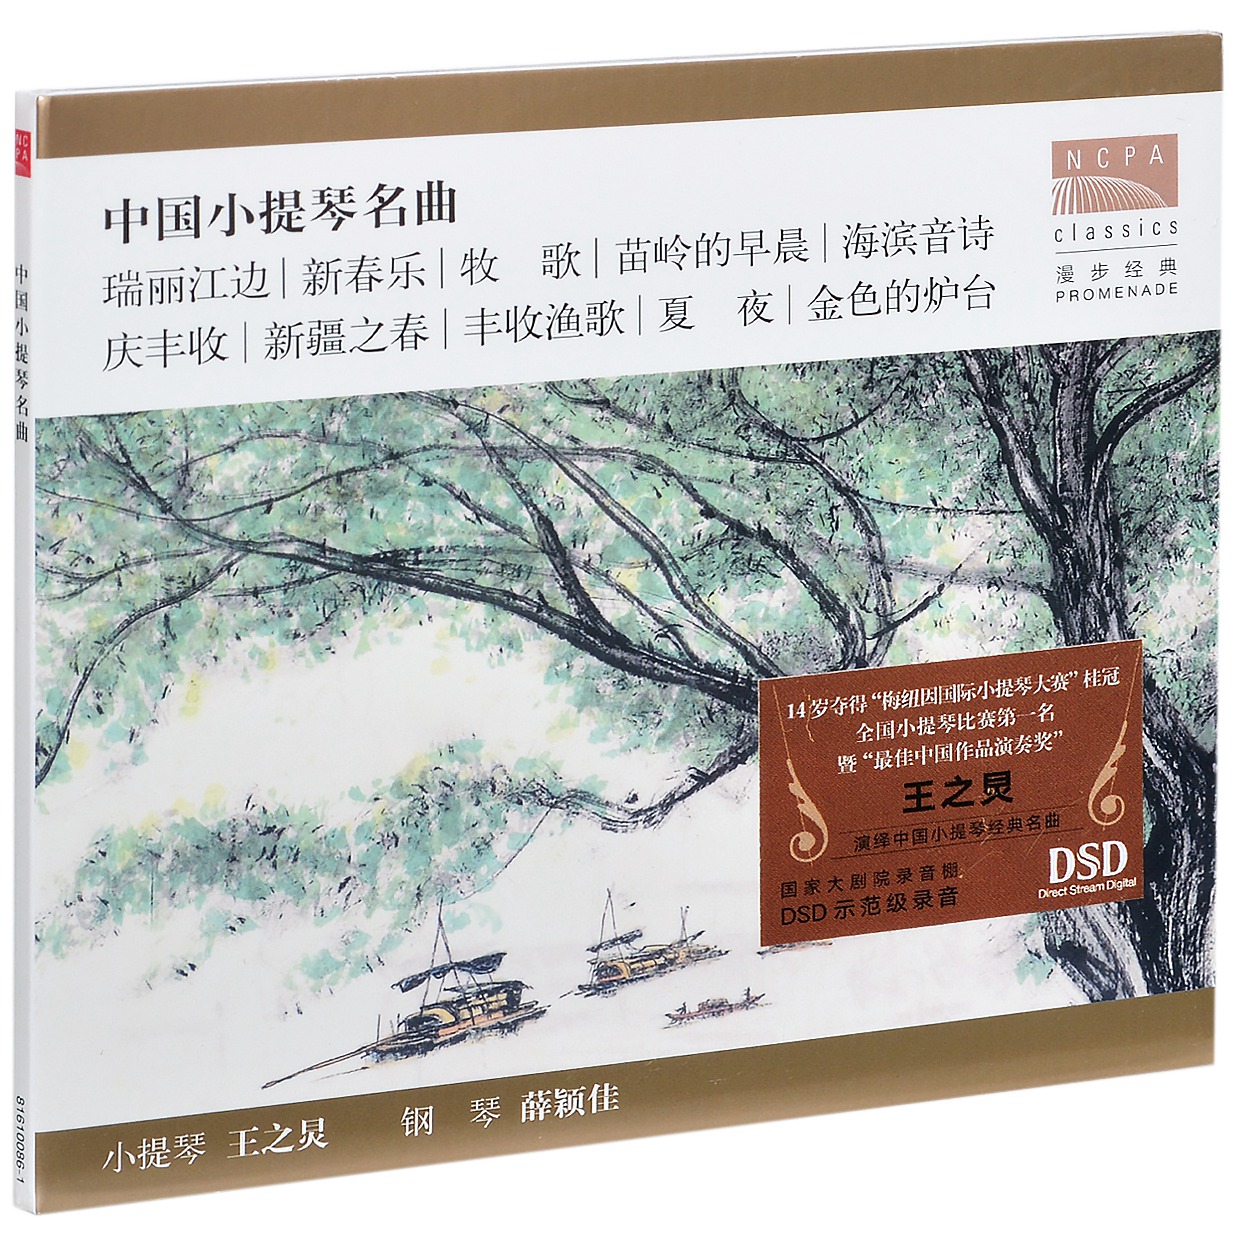 正版国家大剧院 王之炅 中国小提琴名曲 唱片CD碟片